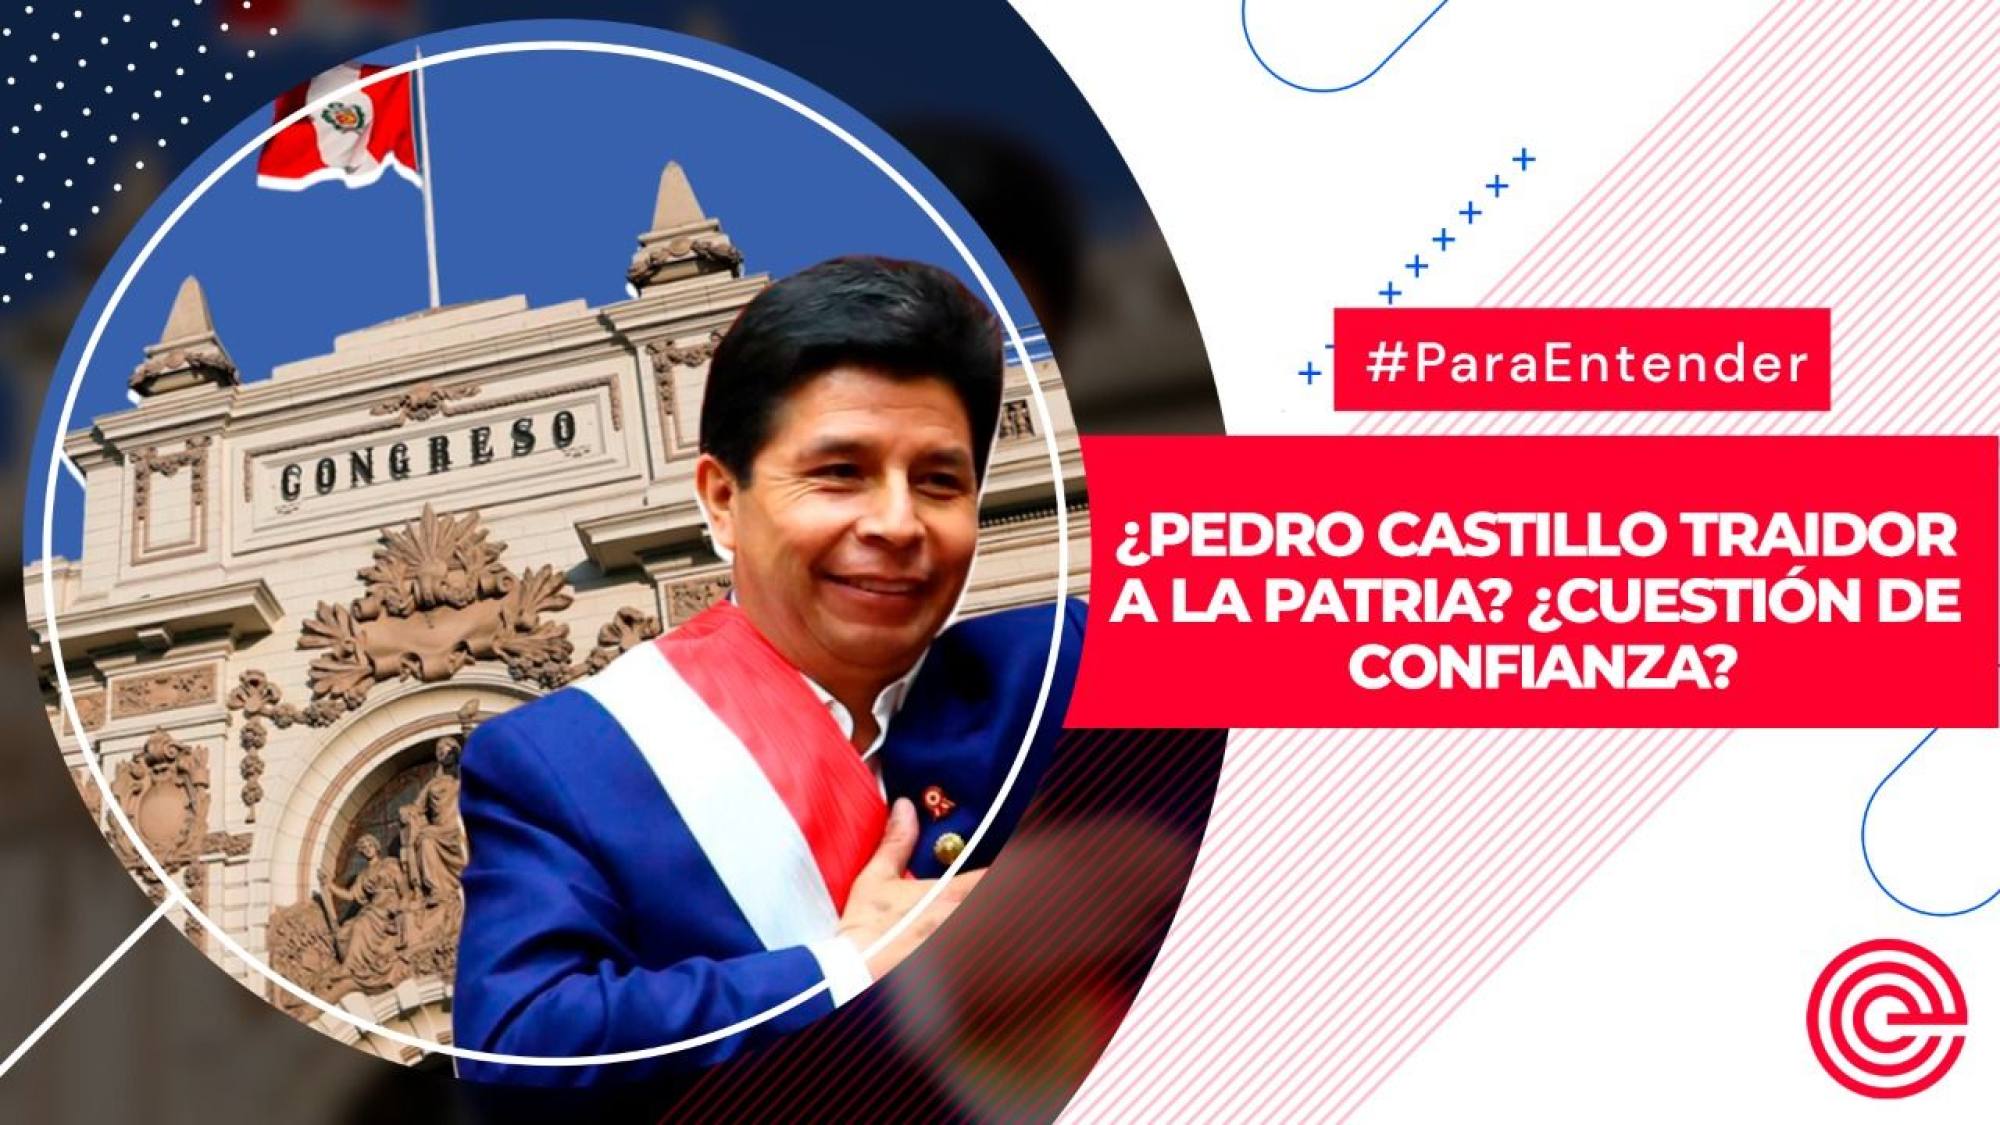 Para Entender | ¿Pedro Castillo traidor a la patria? ¿Cuestión de confianza?, Epicentro TV